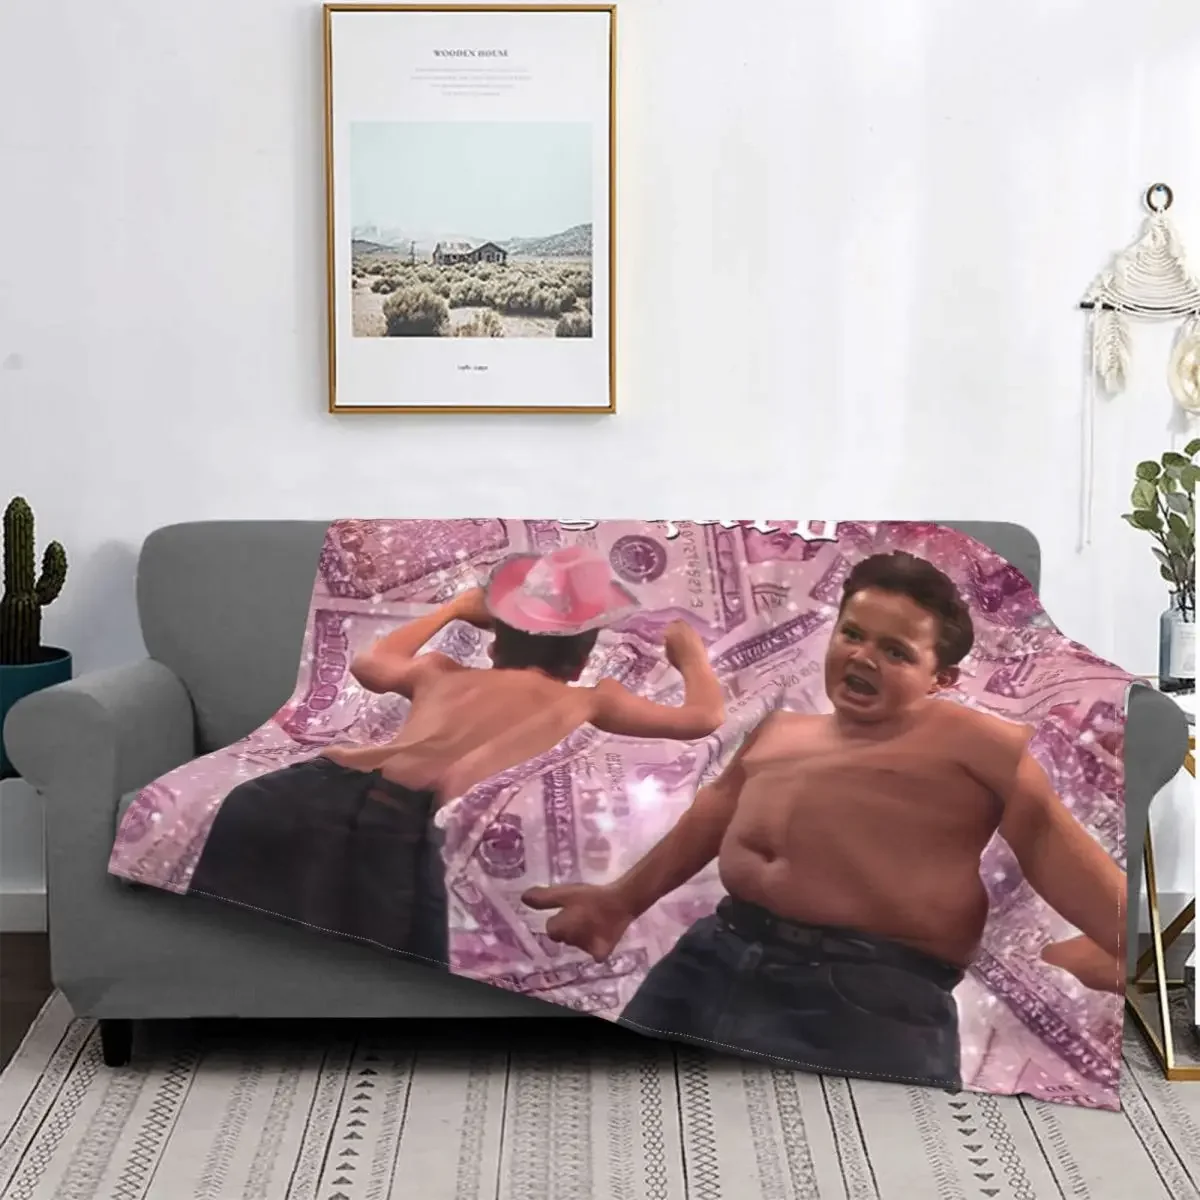 

Гибби вечерние твердое одеяло Флисовое одеяло с забавным сырым мемом ТВ многофункциональное супертеплое одеяло для дома путешествия плюшевое тонкое одеяло